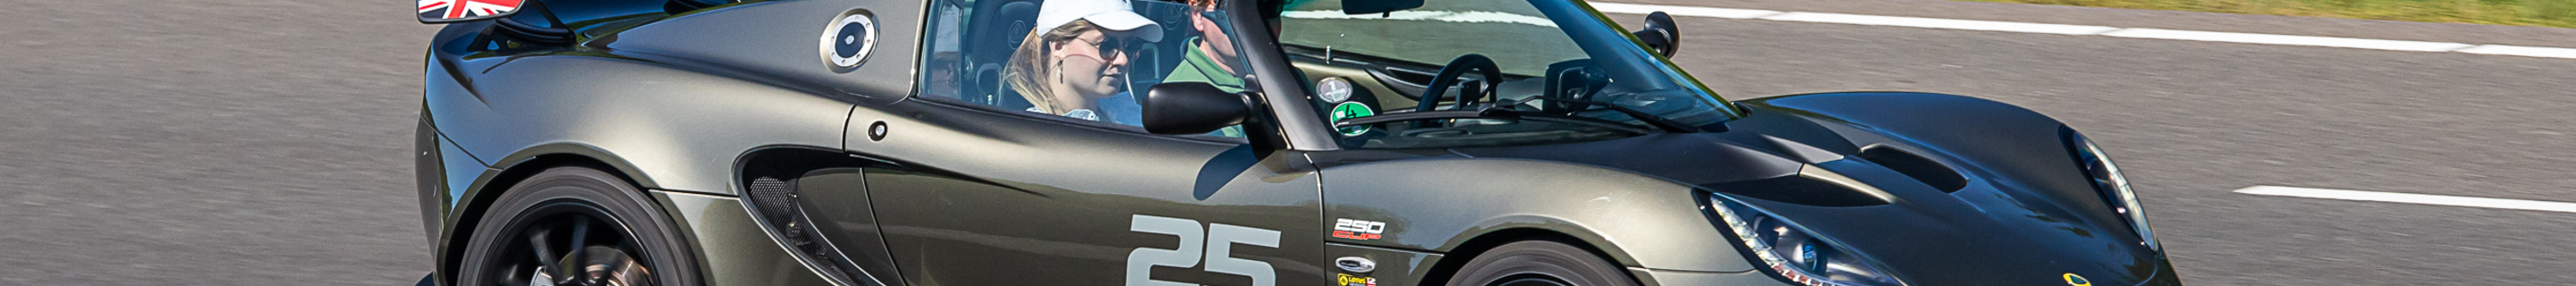 Lotus Elise S3 250 Cup